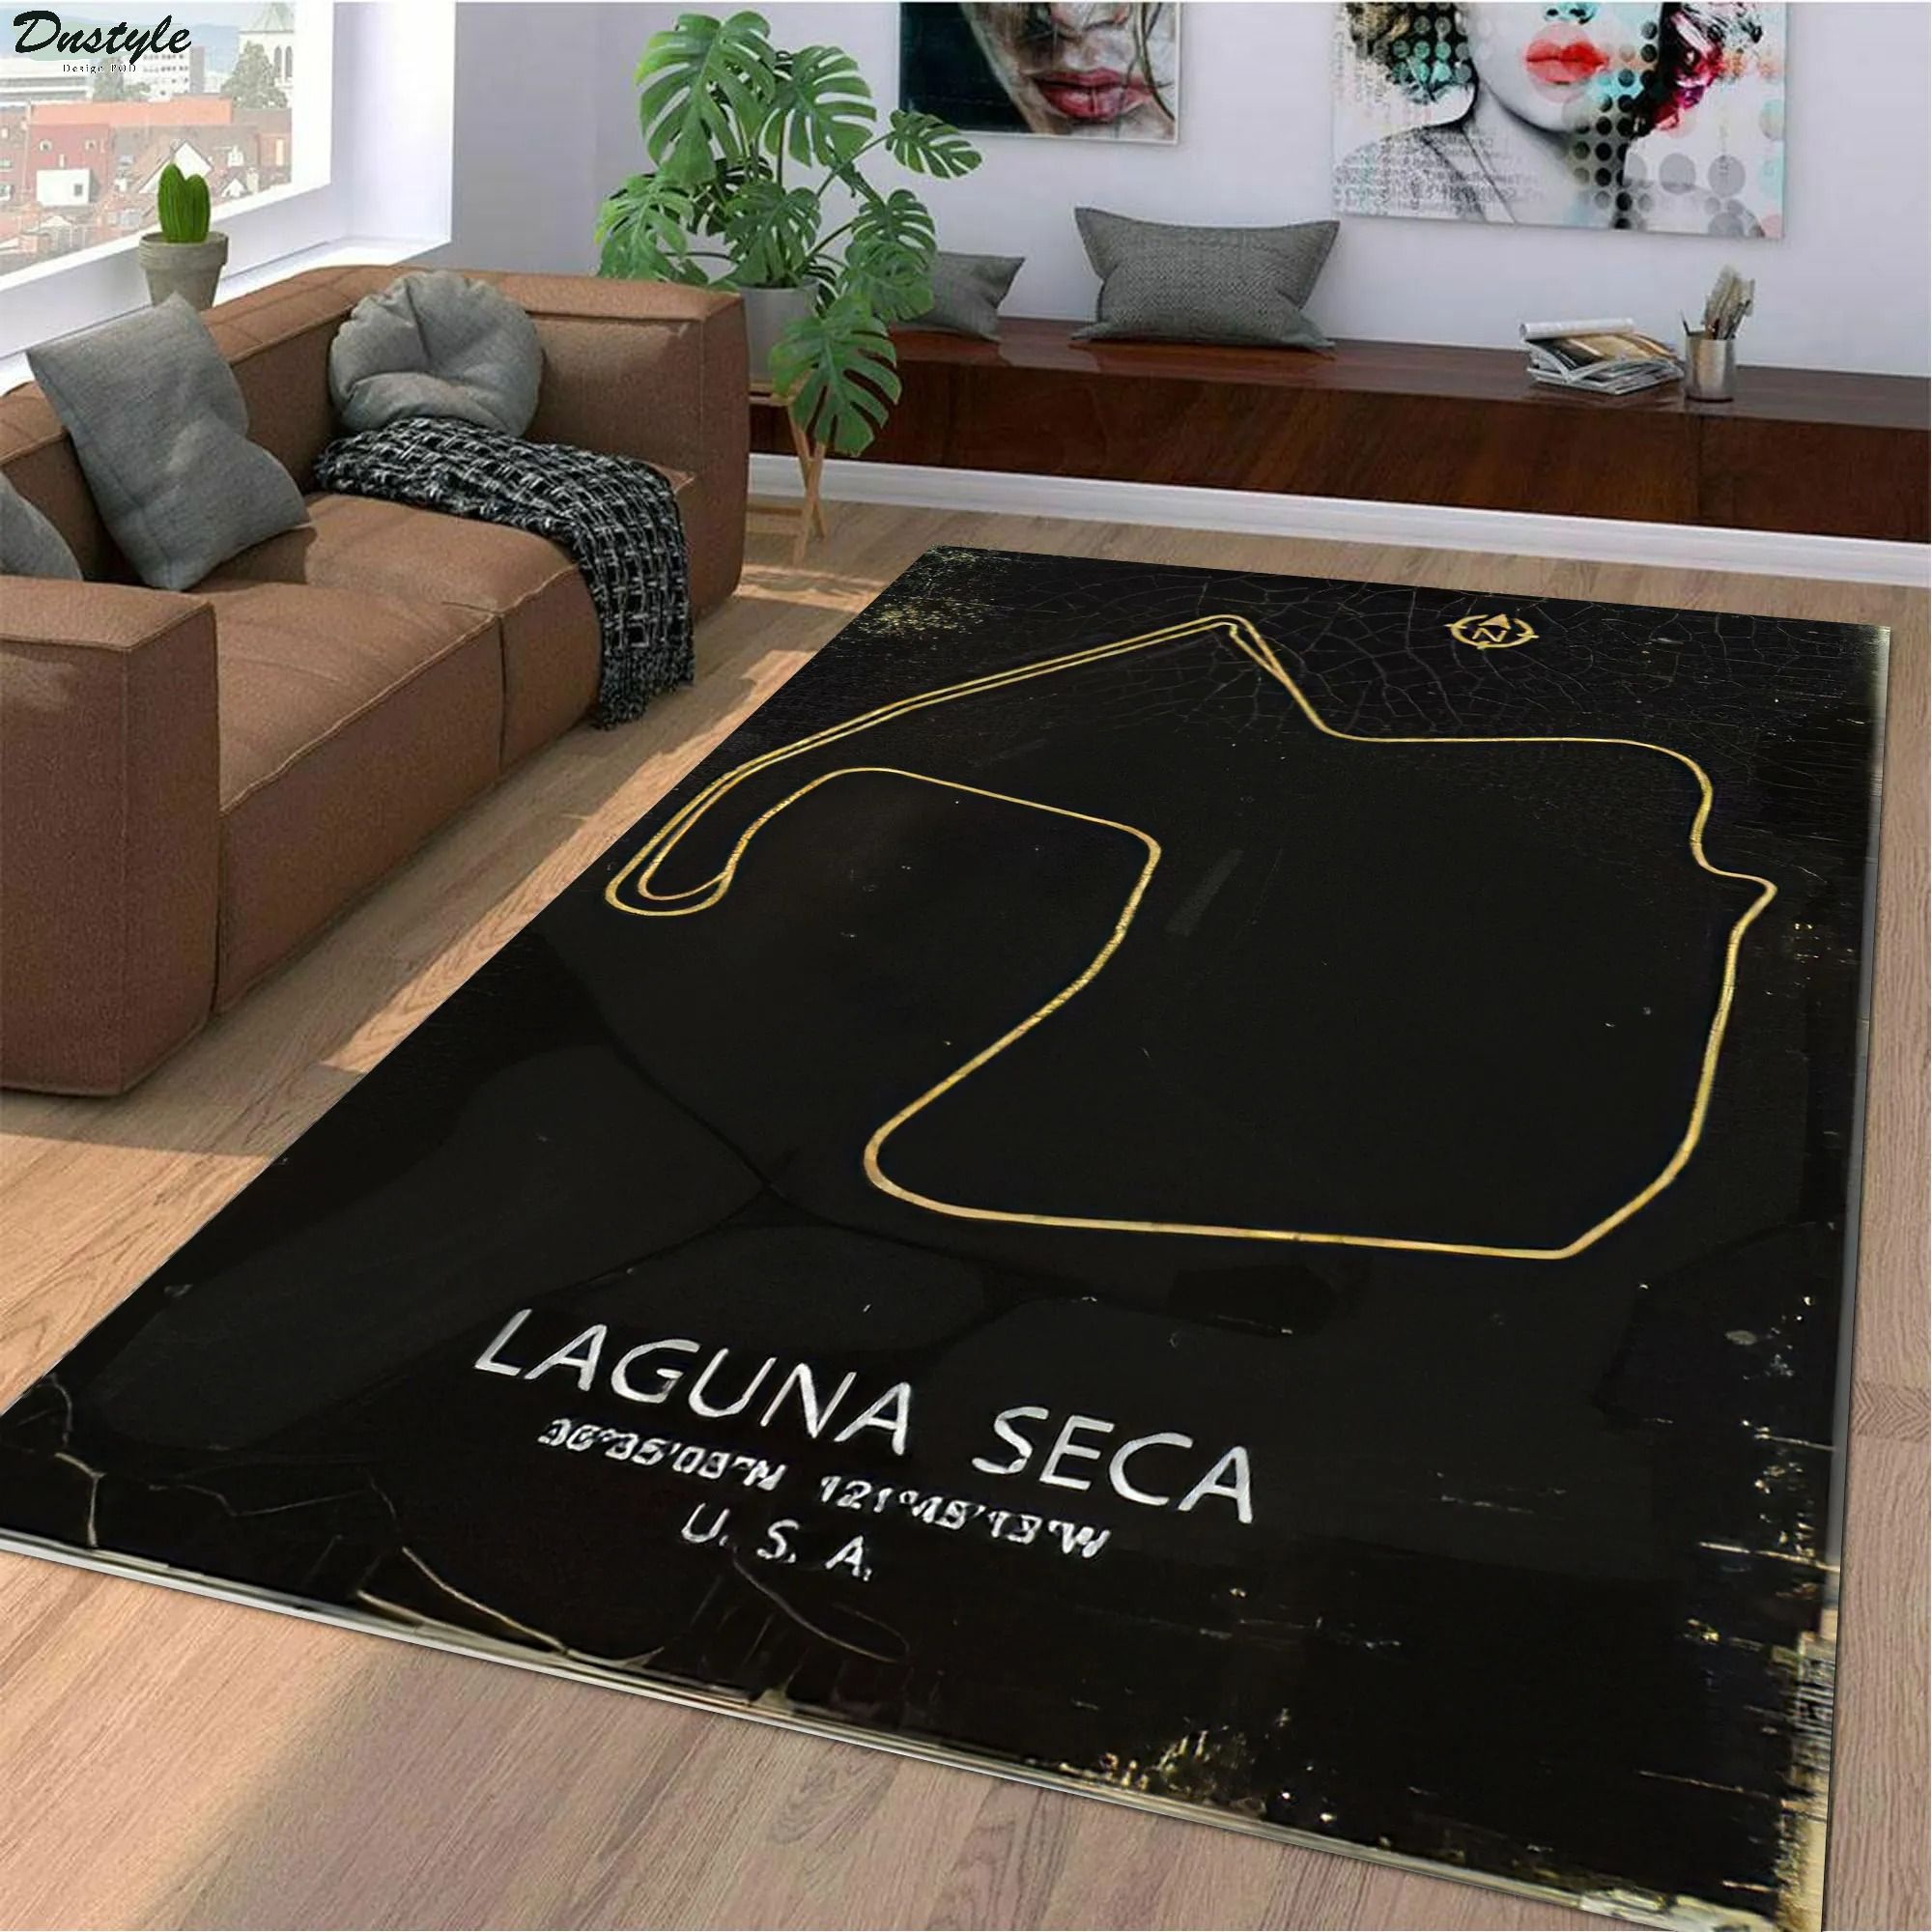 Laguna seca f1 track rug